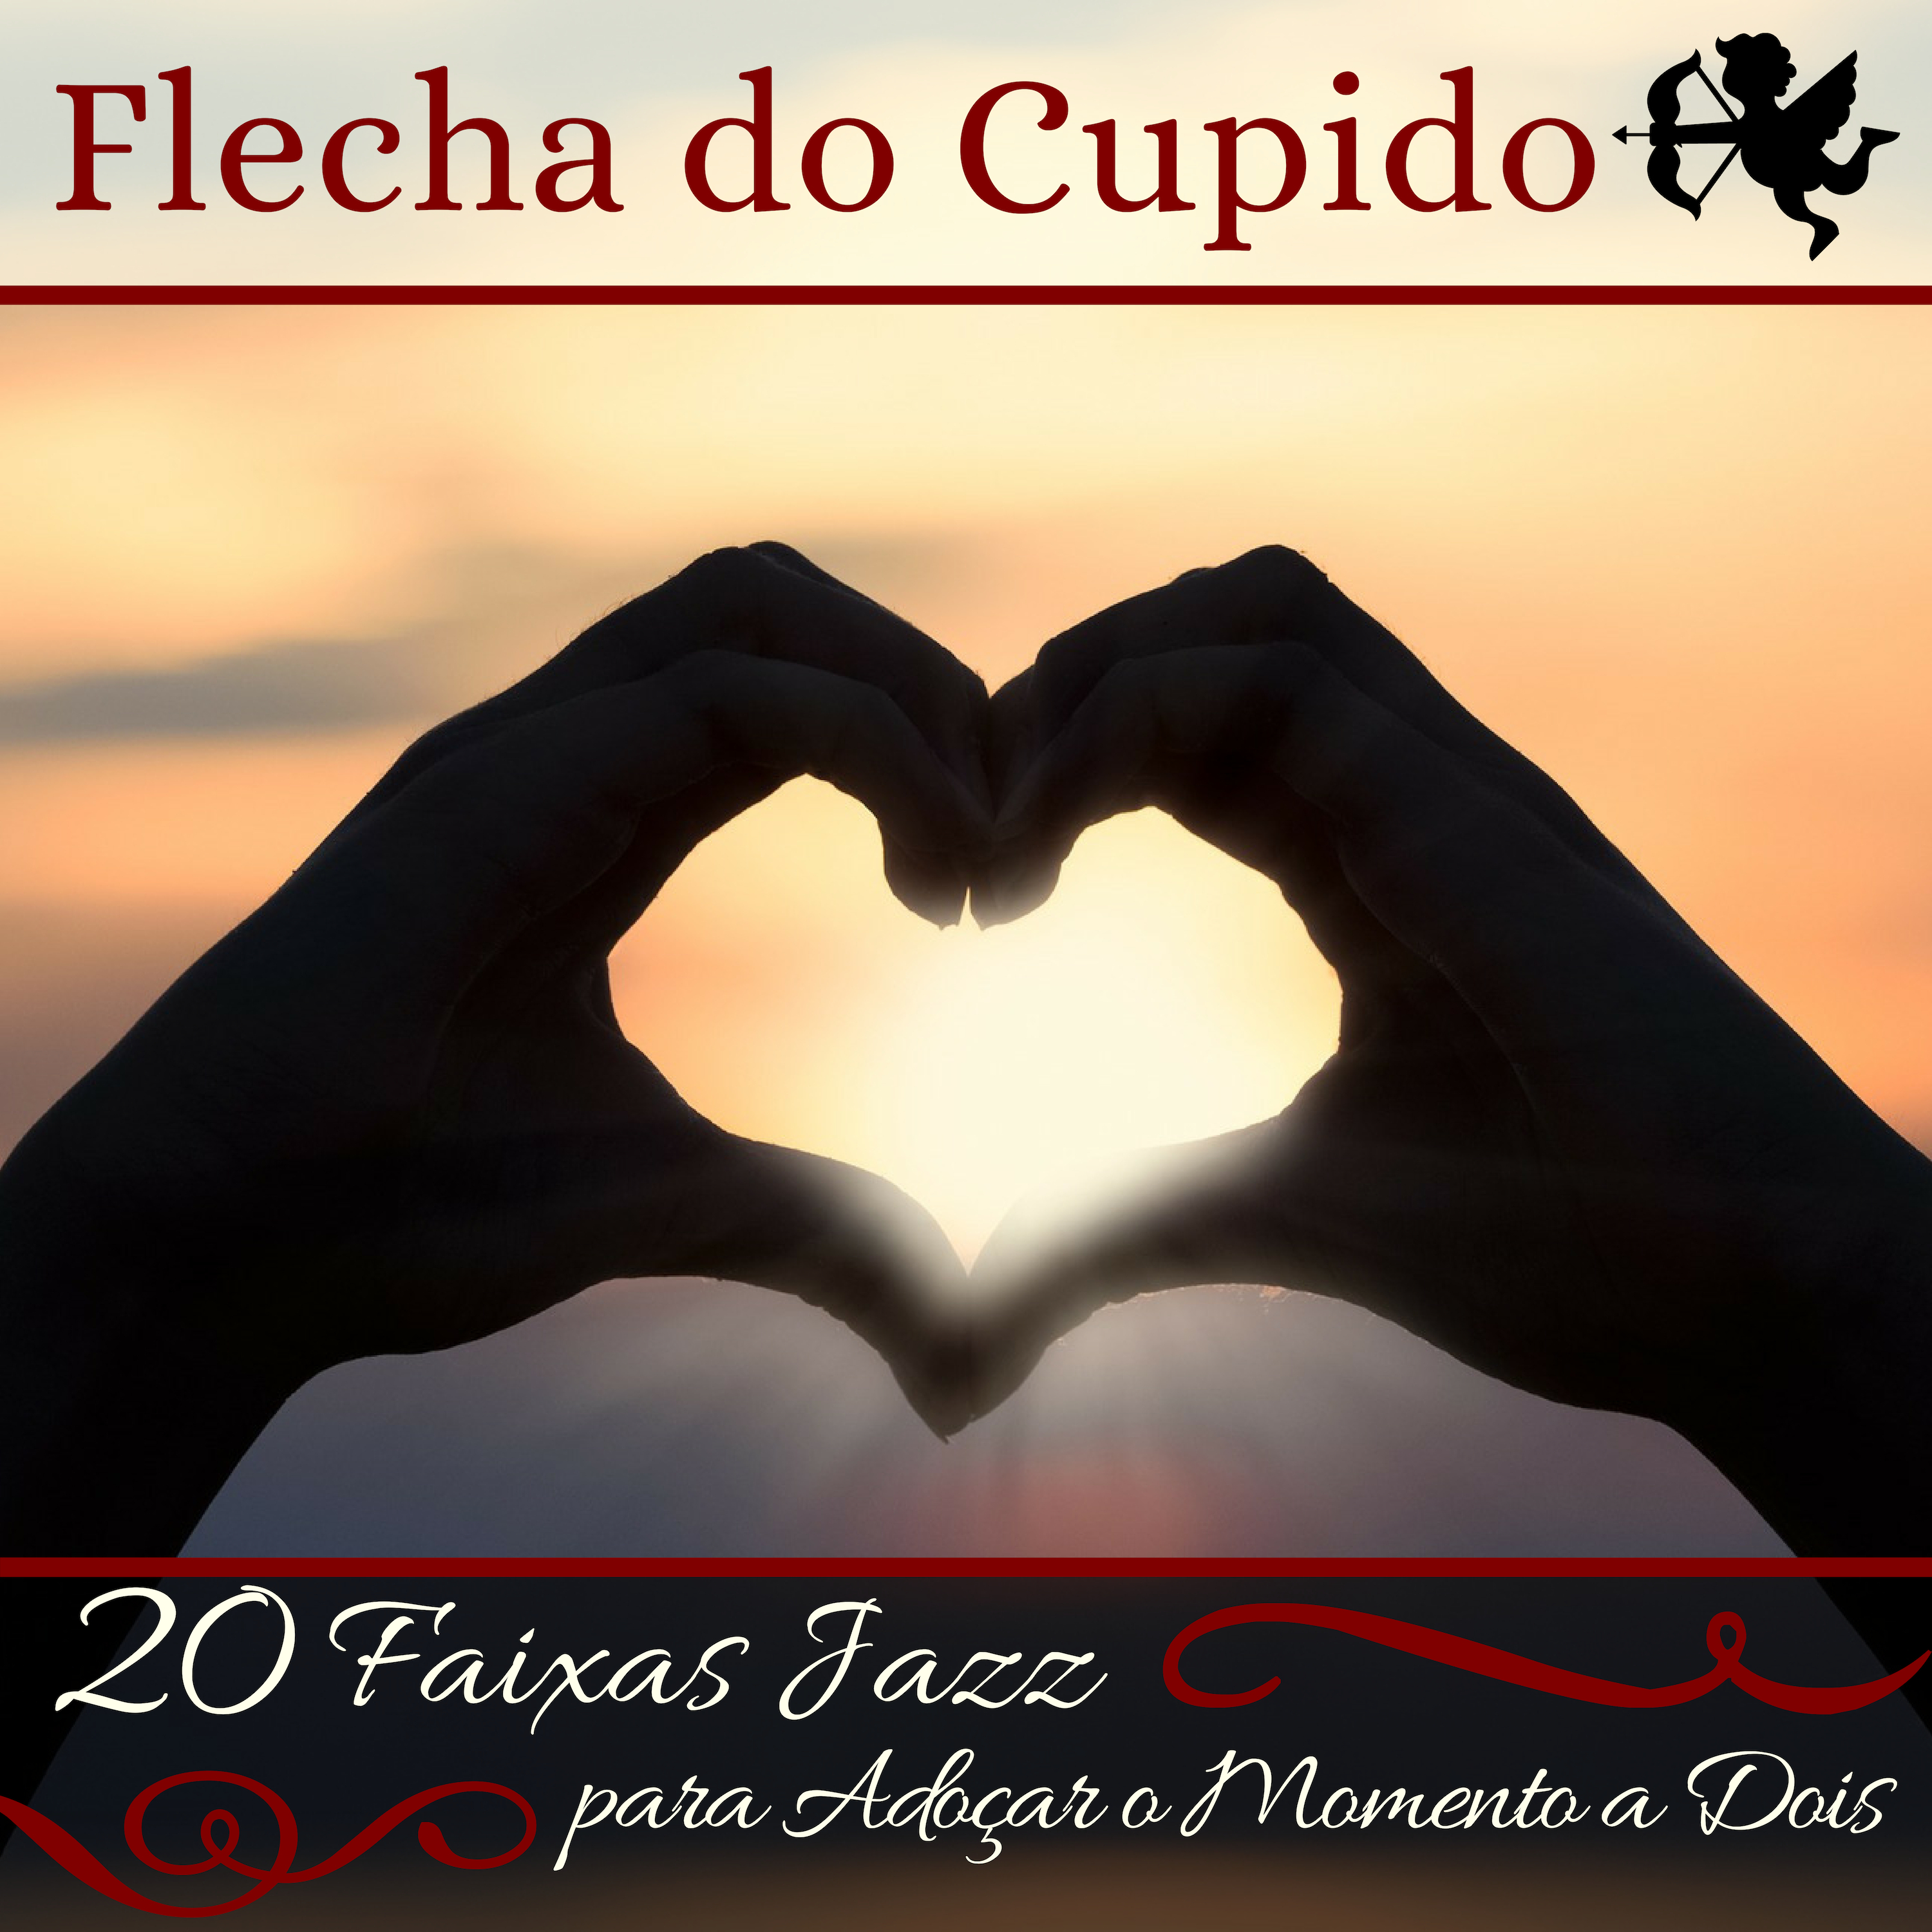 Flecha do Cupido - 20 Faixas Jazz para Adoçar o Momento a Dois, Trilha Sonora Perfeita para o Dia dos Namorados